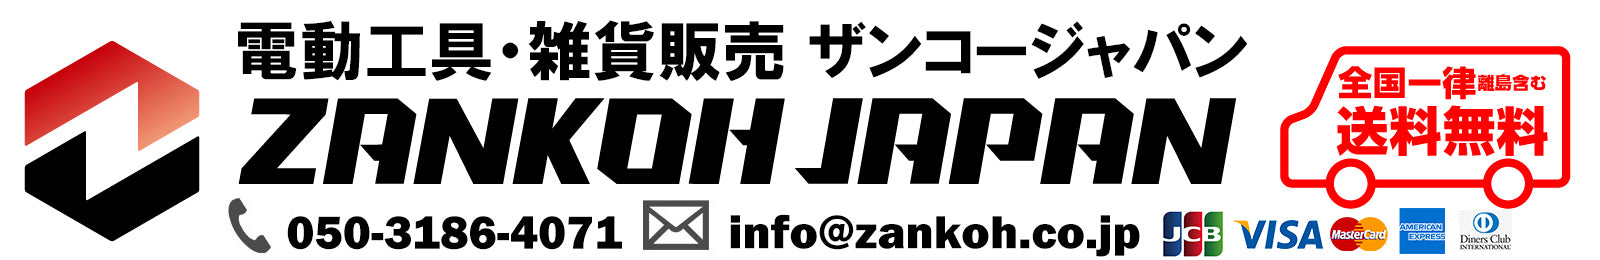 電動工具・雑貨販売 ZANKOH JAPAN